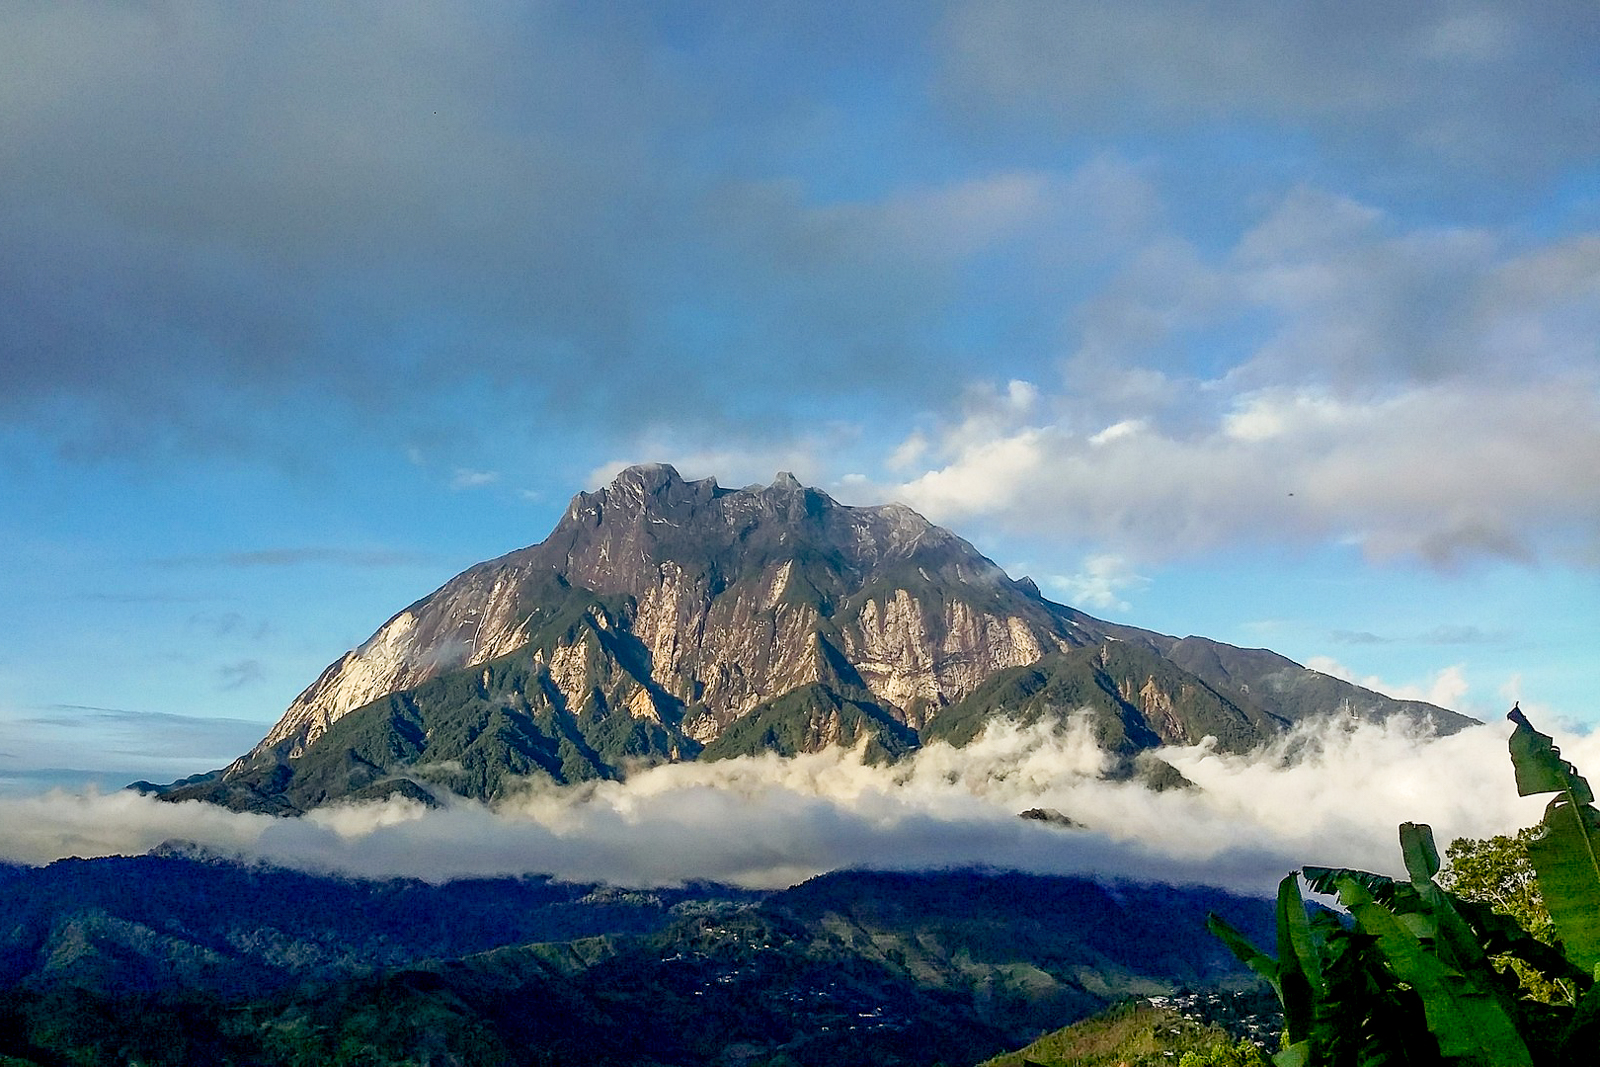 Mount Kinabalu in Malaysia